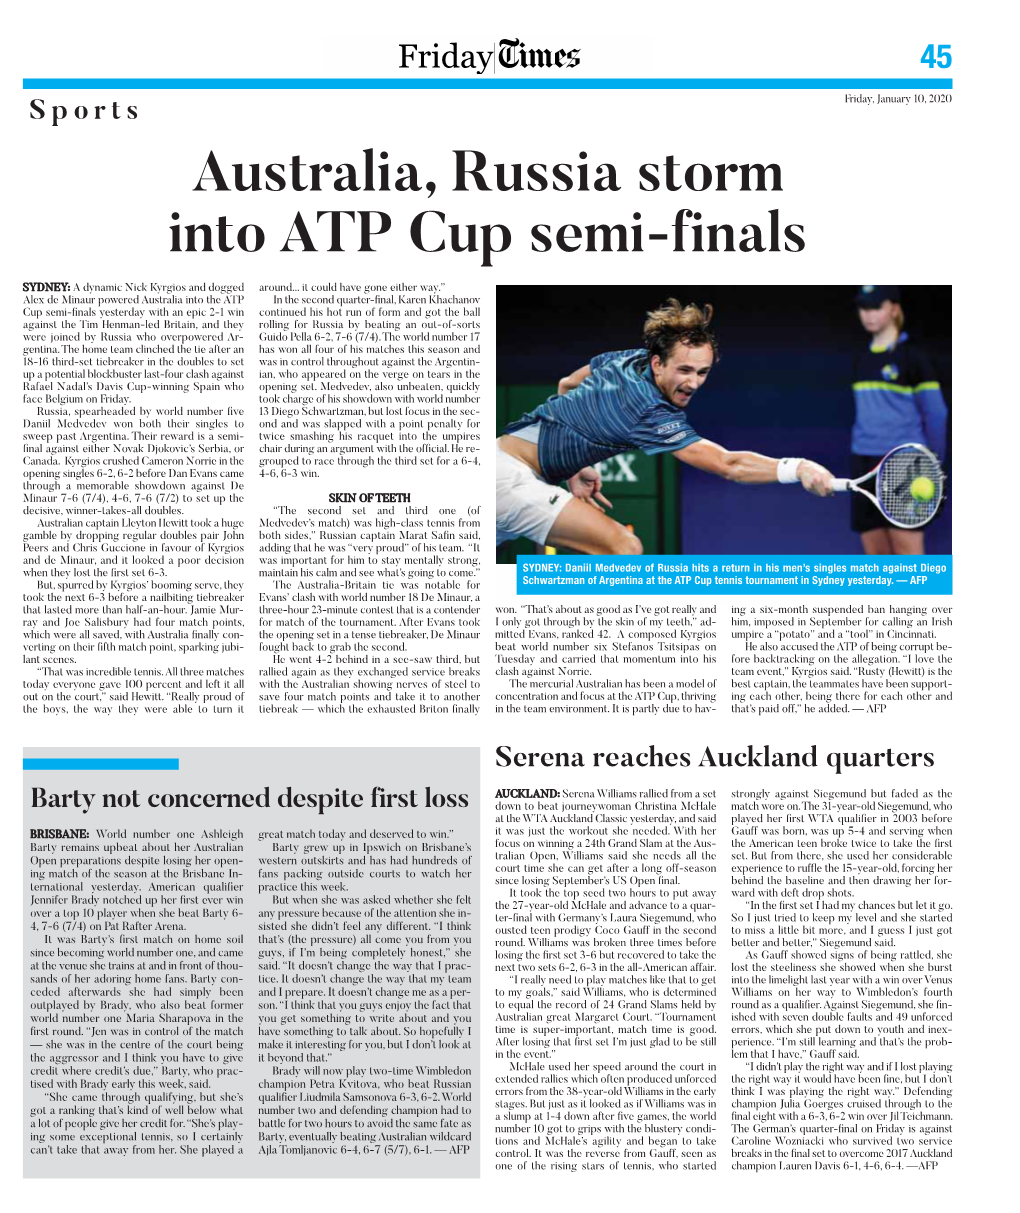 Australia, Russia Storm Into ATP Cup Semi-Finals